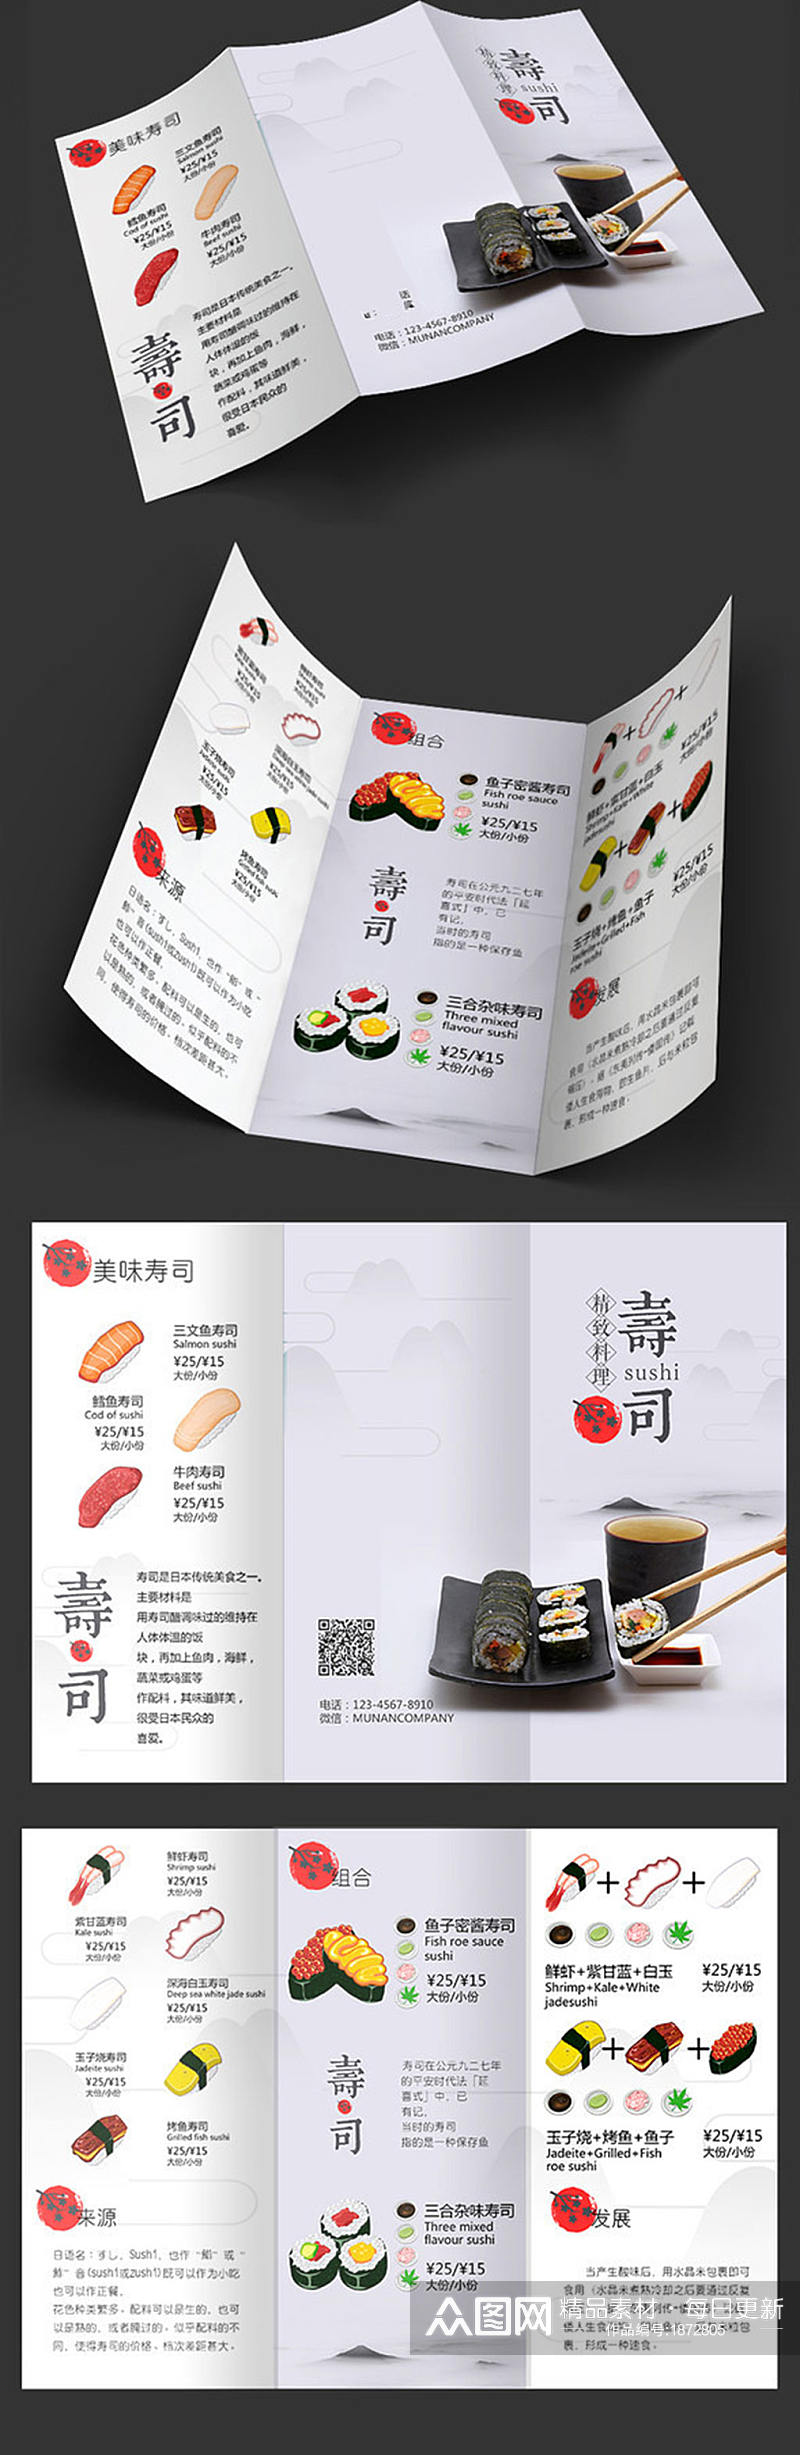 寿司菜单折页设计素材